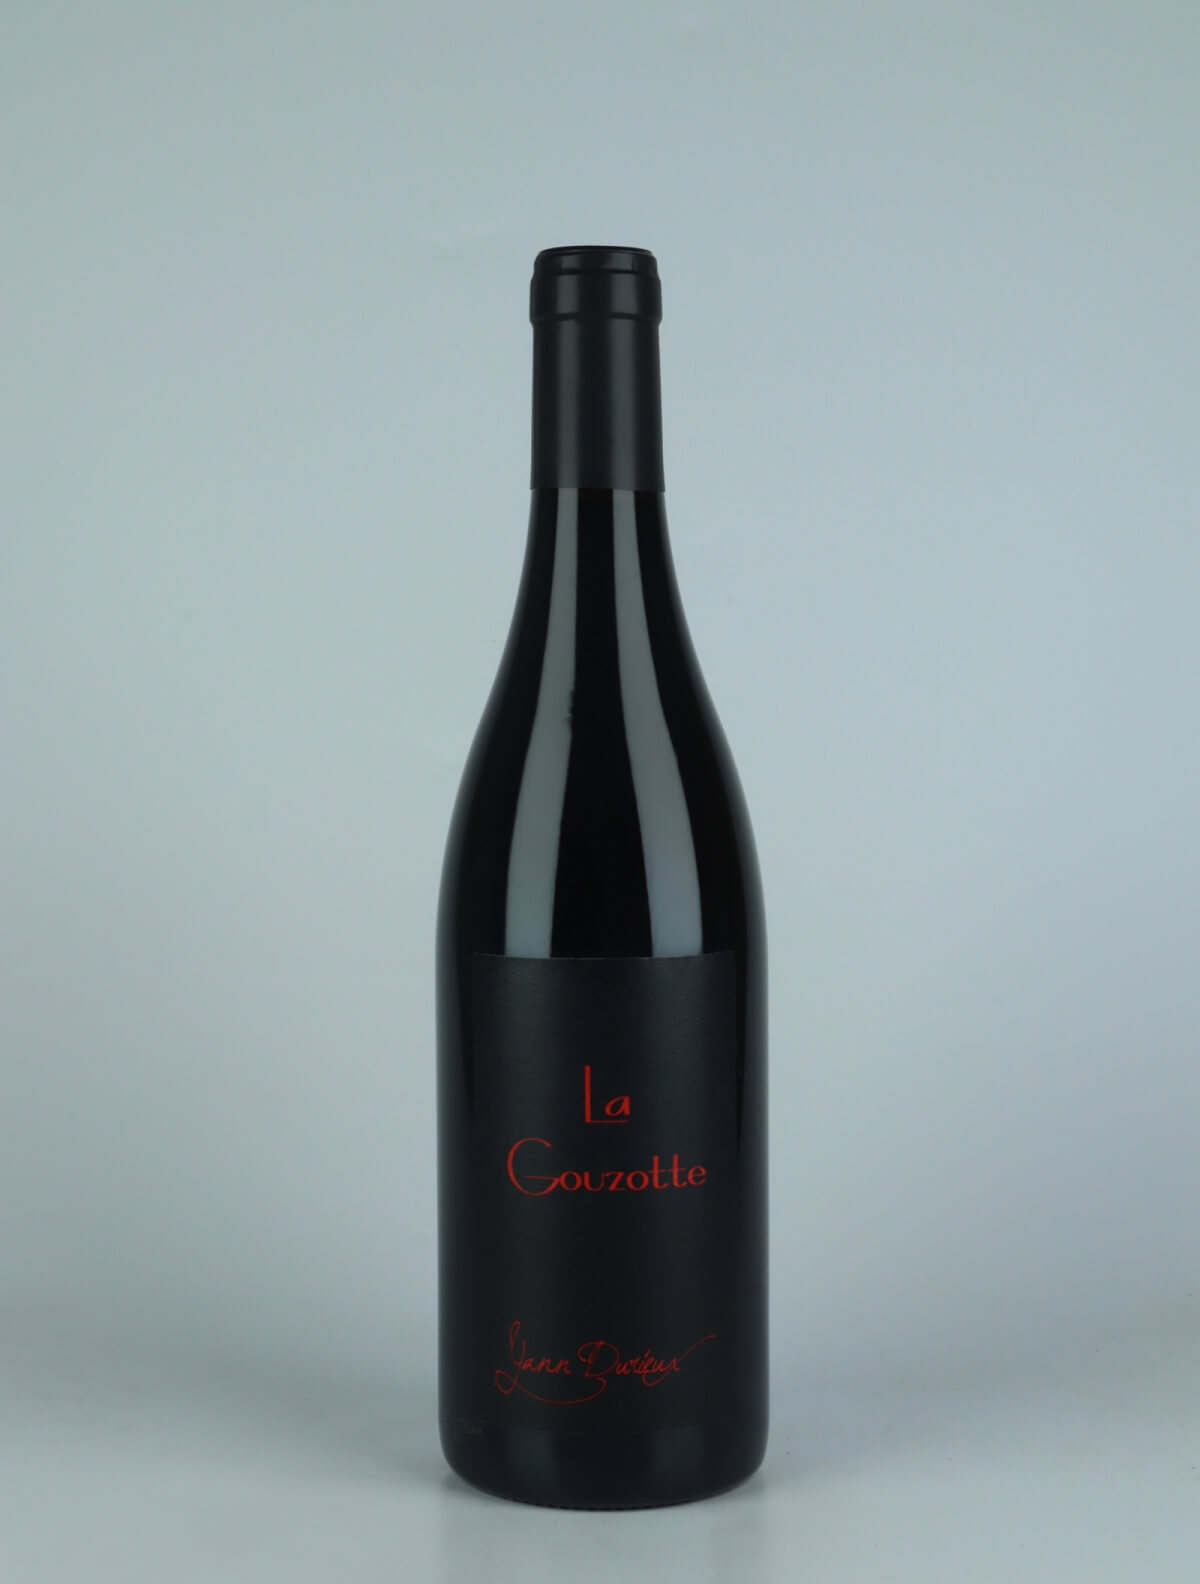 En flaske 2021 La Gouzotte Rødvin fra Yann Durieux, Bourgogne i Frankrig